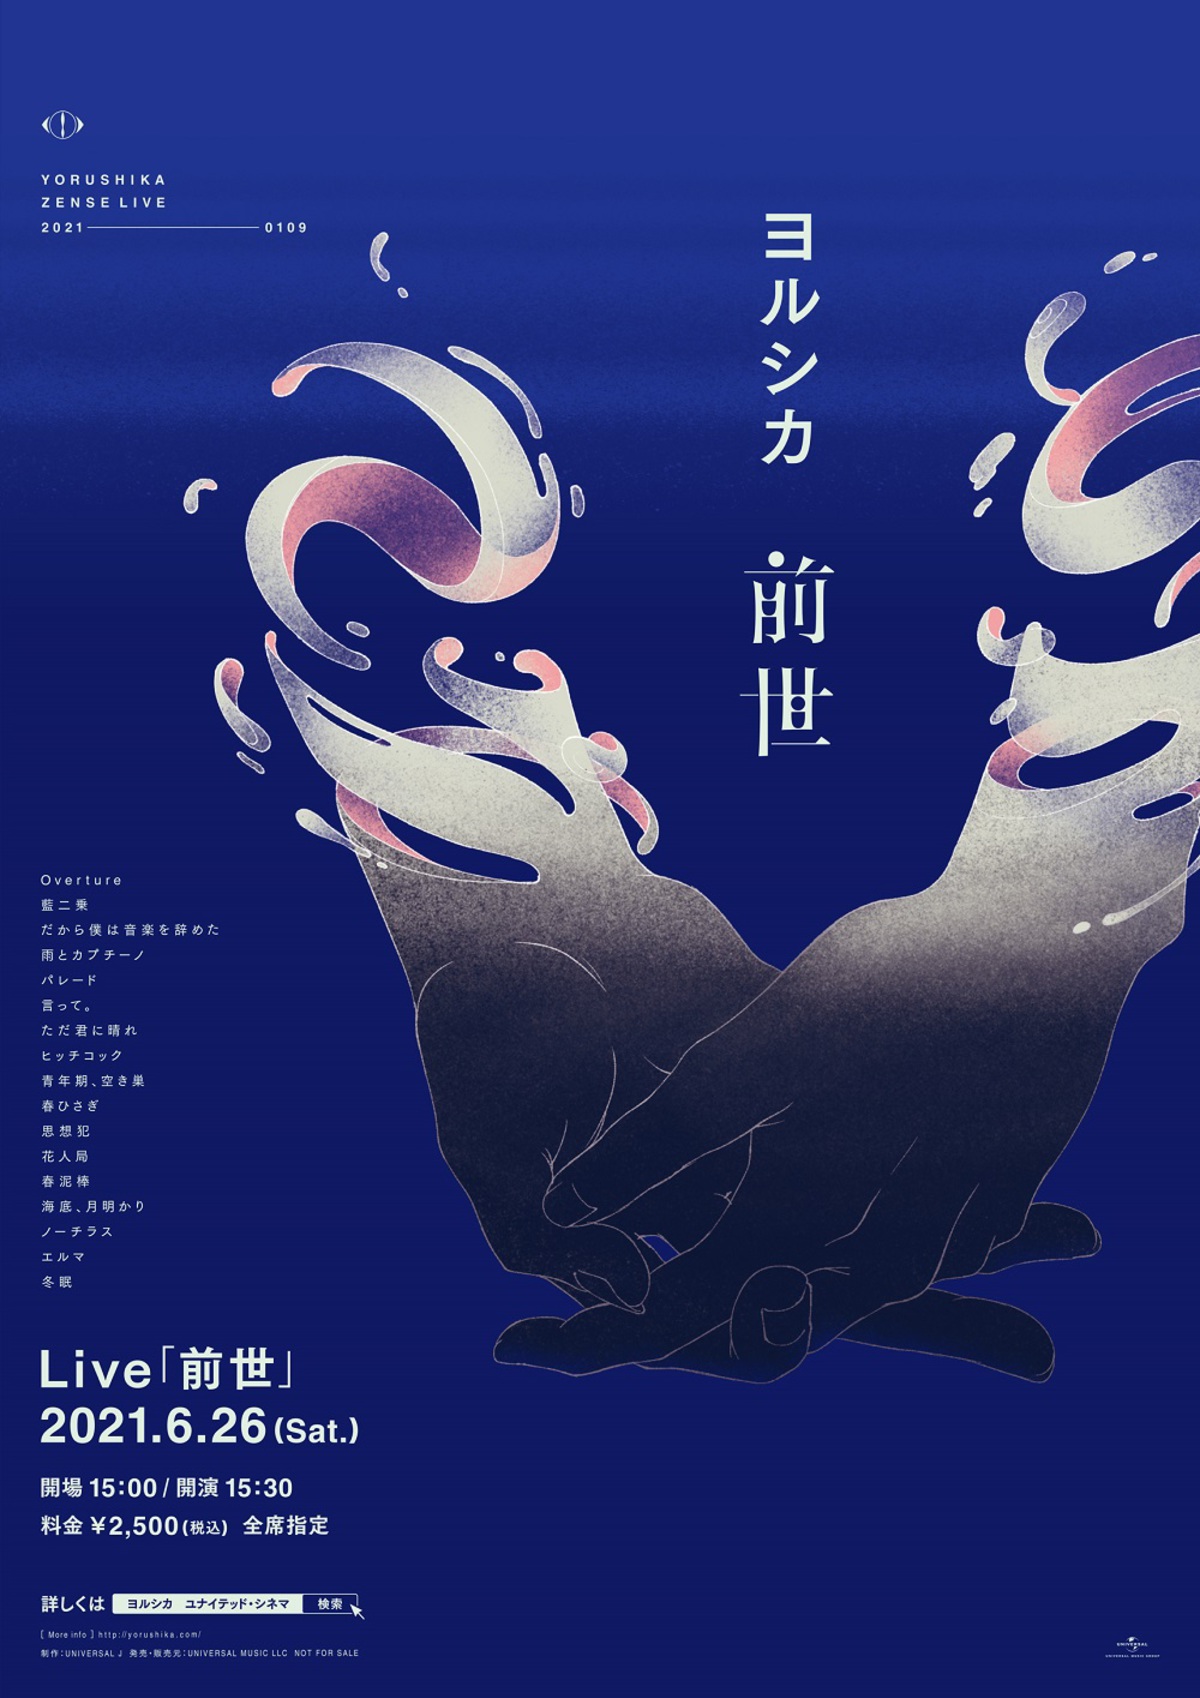 ヨルシカ ライヴ映像作品 前世 プレミアム上映会の東京 大阪地区開催日決定